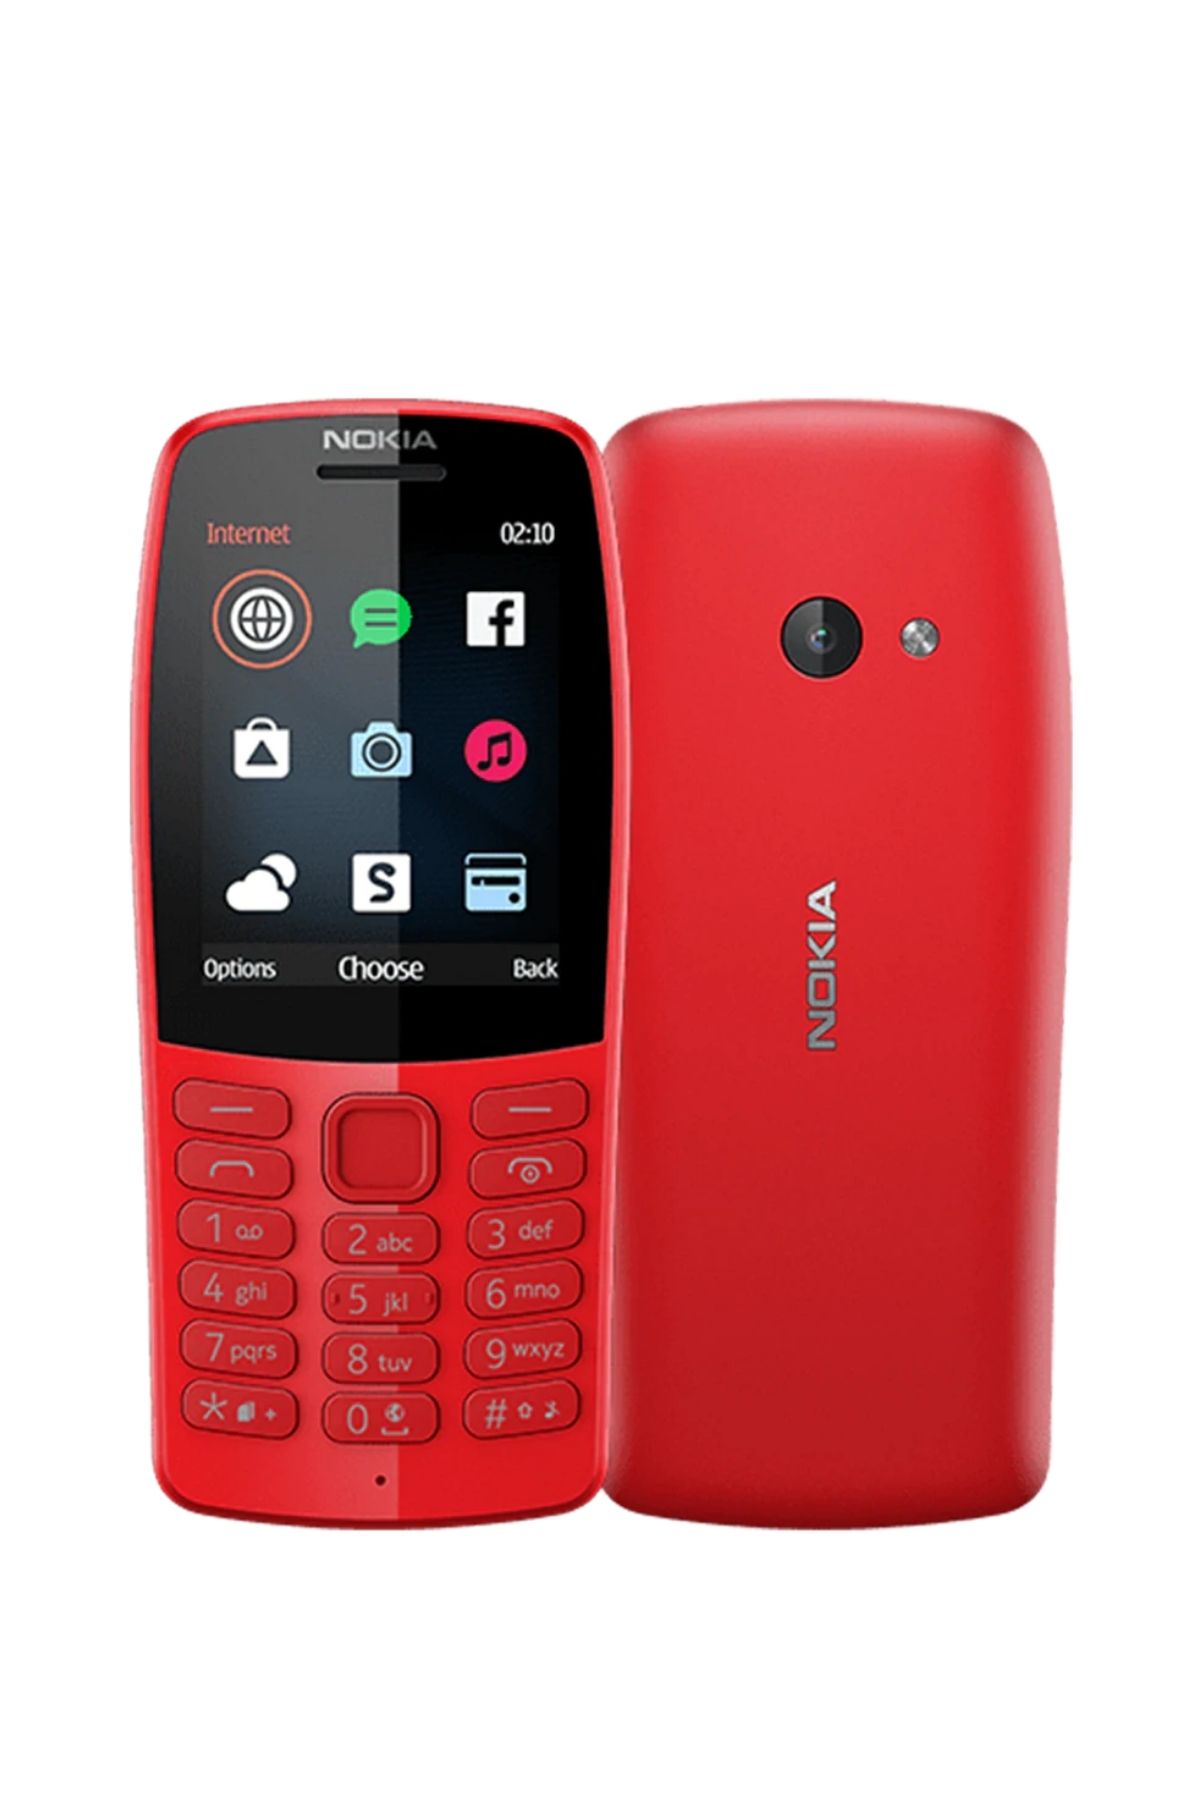 Nokia Mobil N150 Çift SIM Kart 